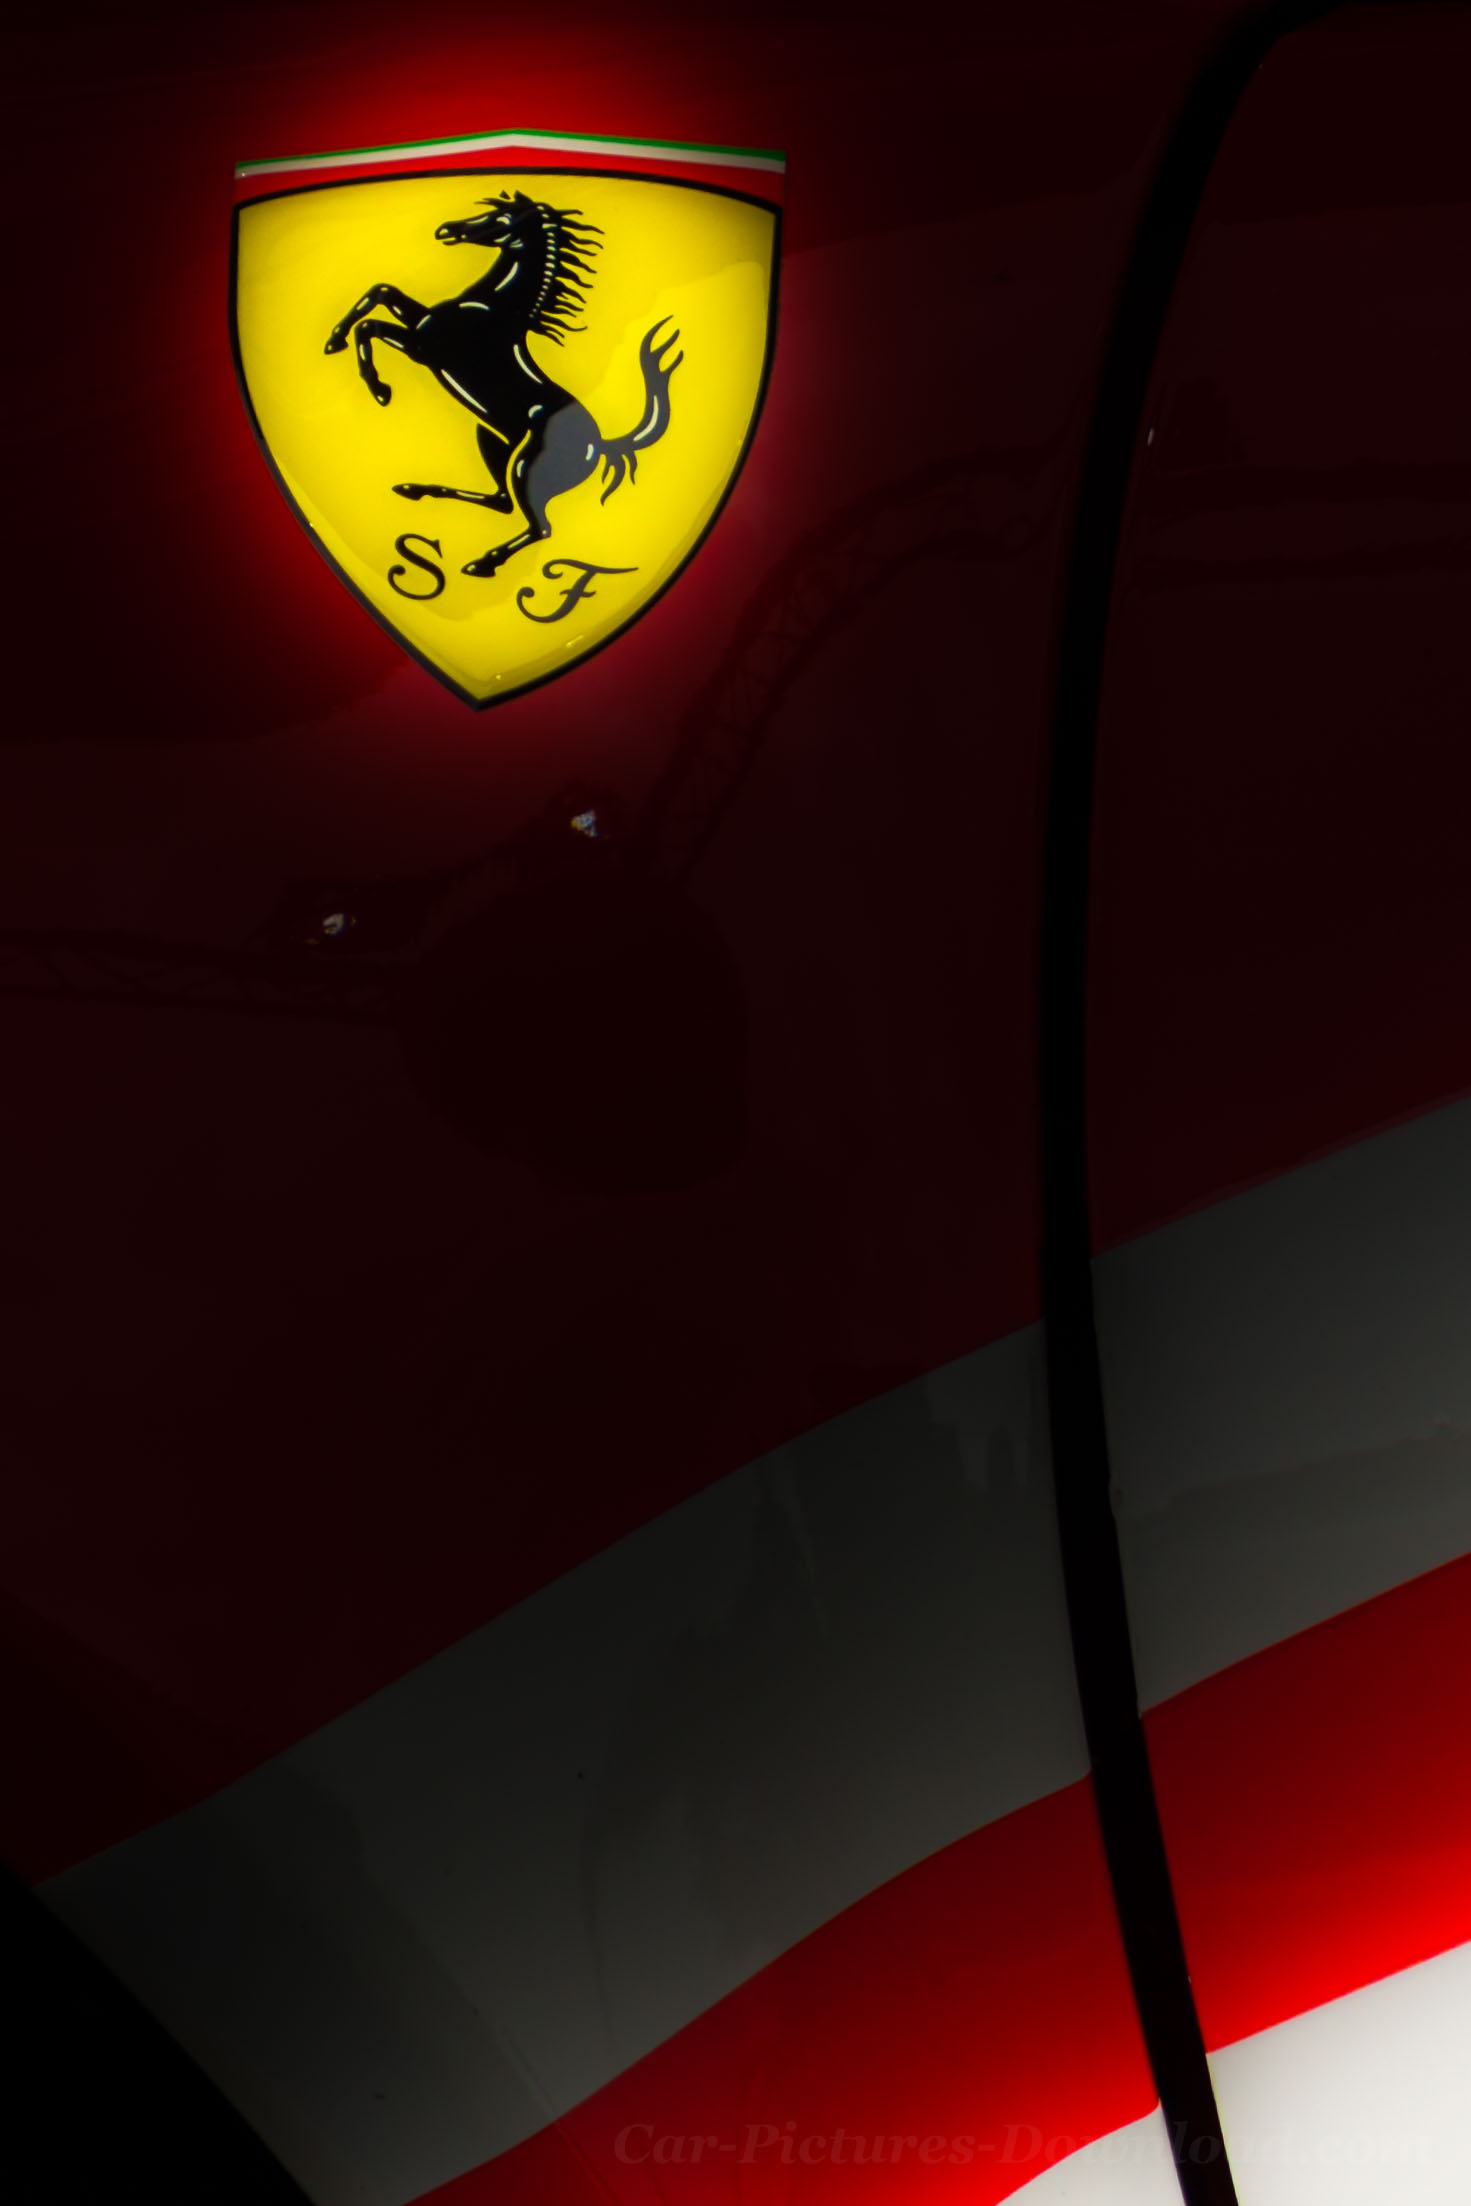 23+] Ferrari Logo Wallpaper For Mobile - WallpaperSafari